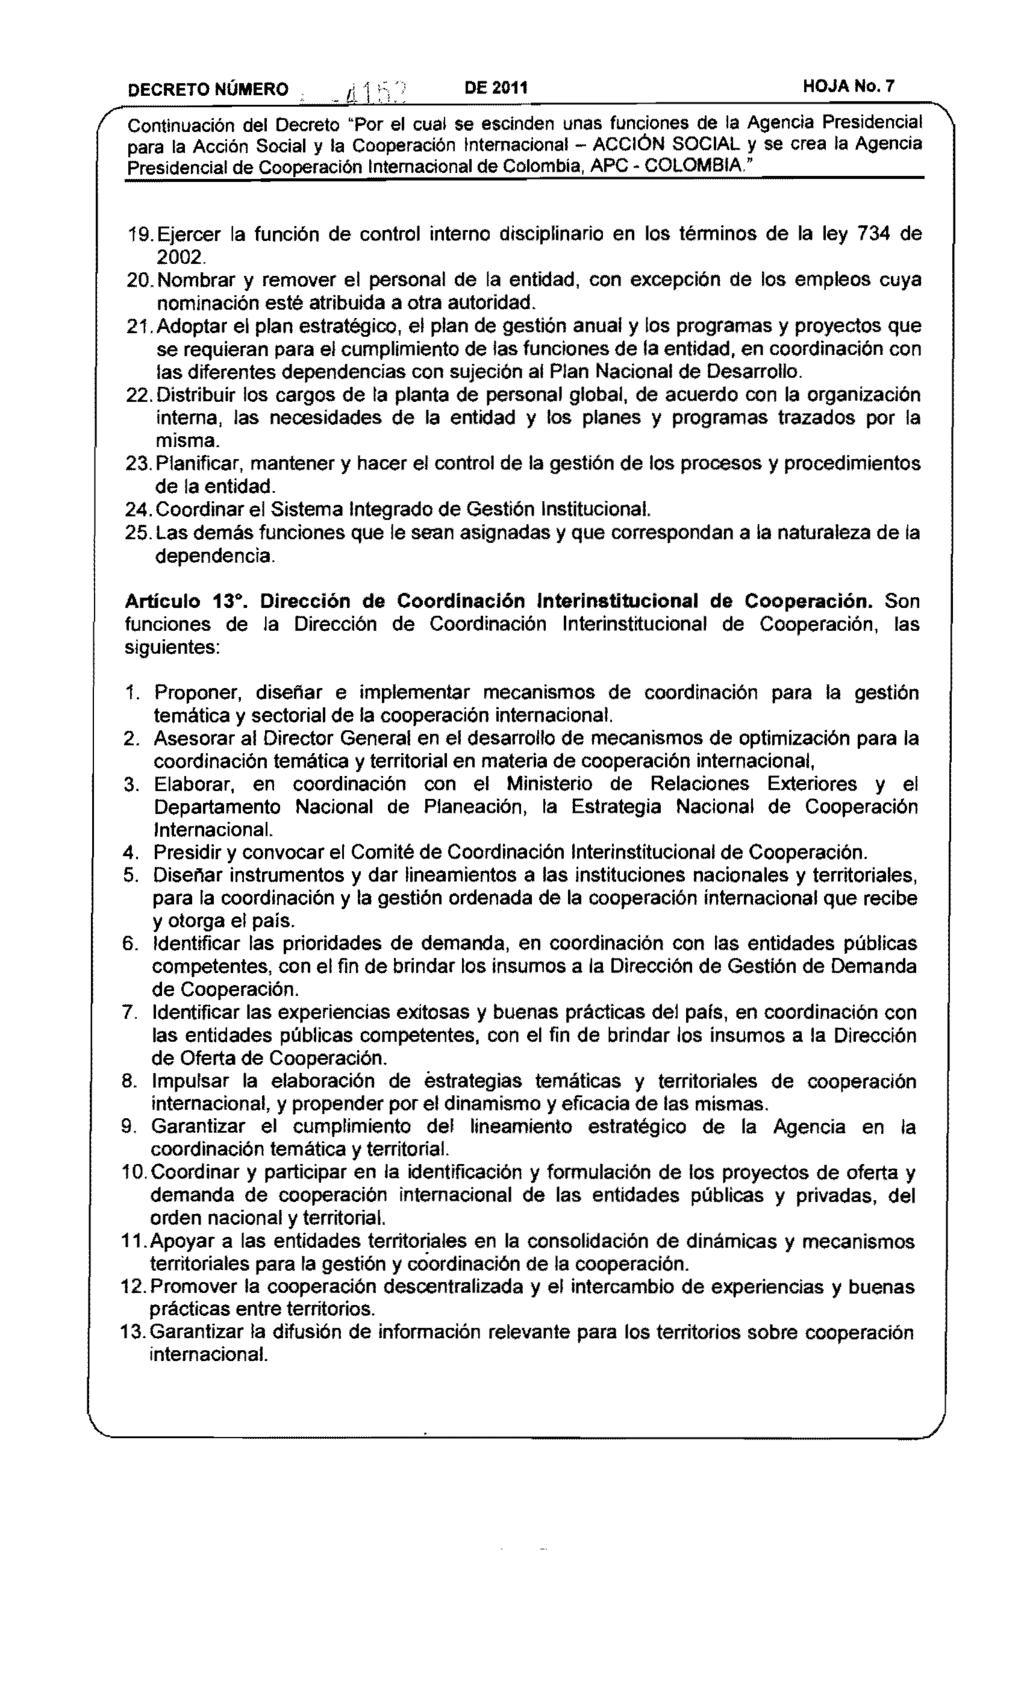 DECRETO NÚMERO DE 2011 HOJA No. 7 Presidencial de Cooperación Internacional de Colombia, APC COLOMBIA" 19. Ejercer la función de control interno disciplinario en los términos de la ley 734 de 2002.